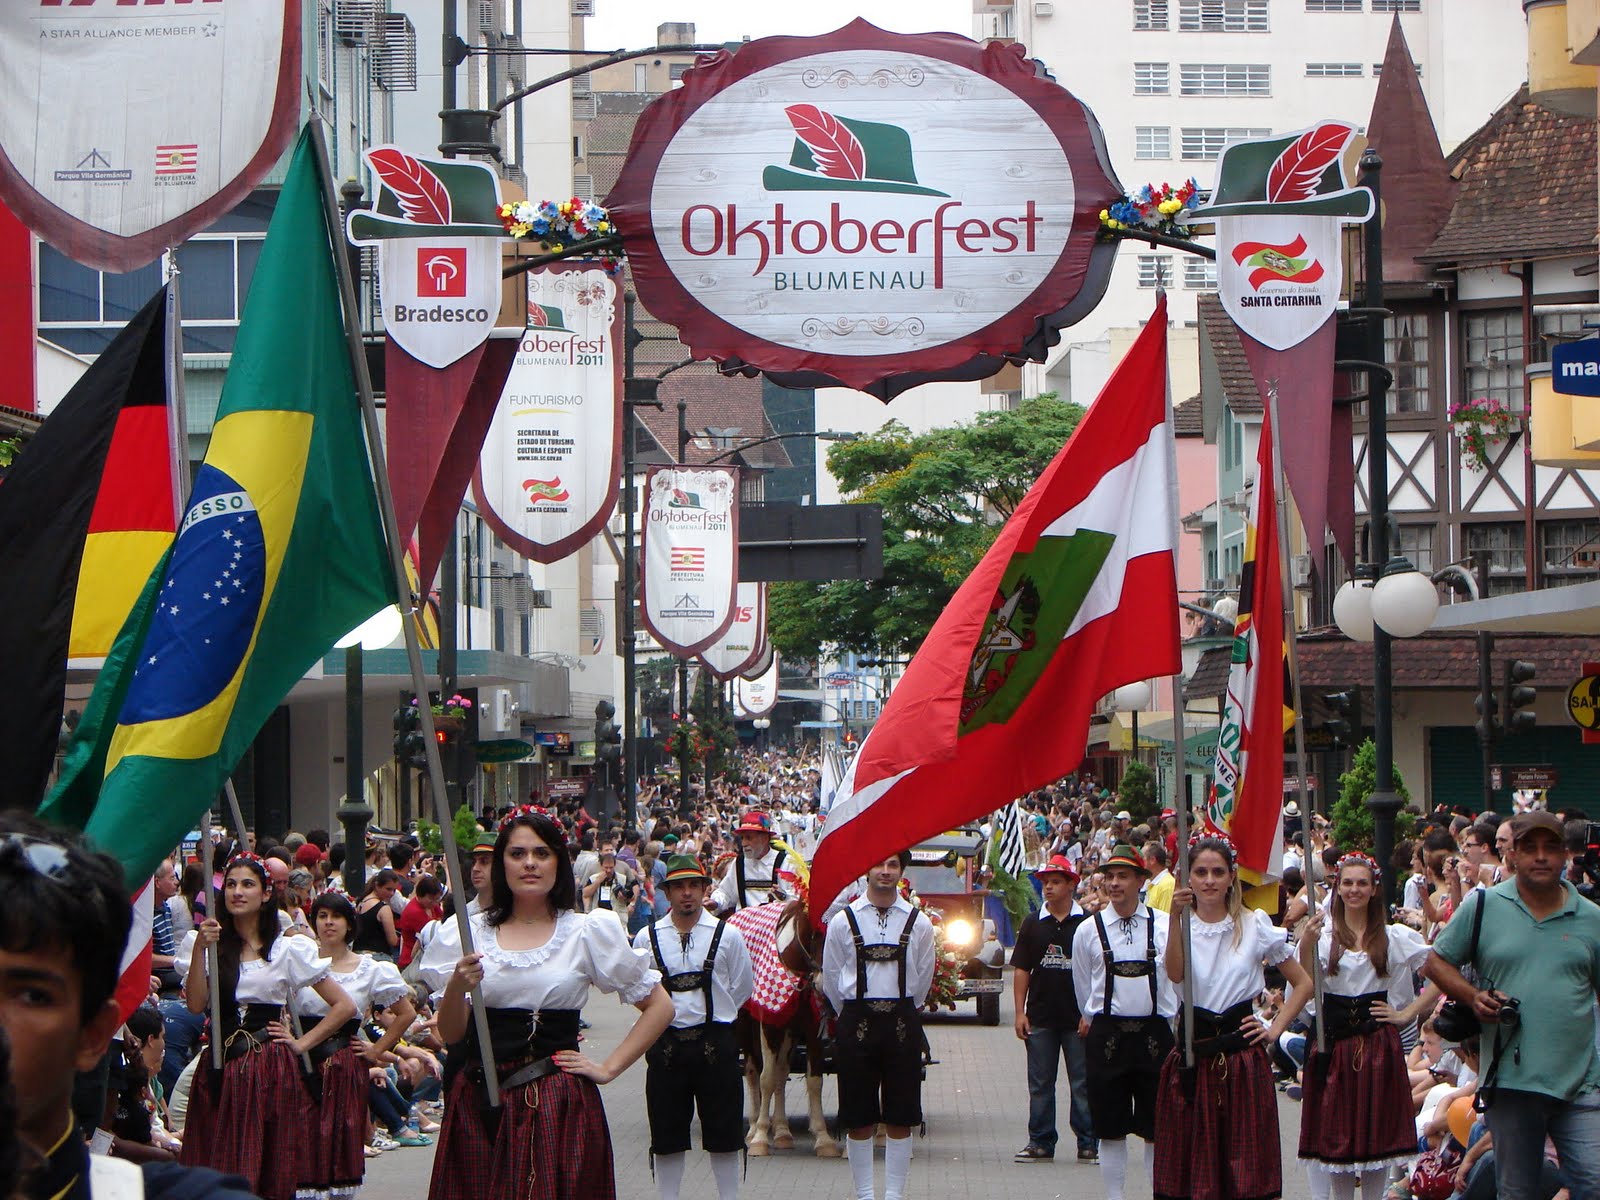 Oktoberfest Blumenau Maior festa alemã da América Latina chega a sua 33ª edição Revista Embarque